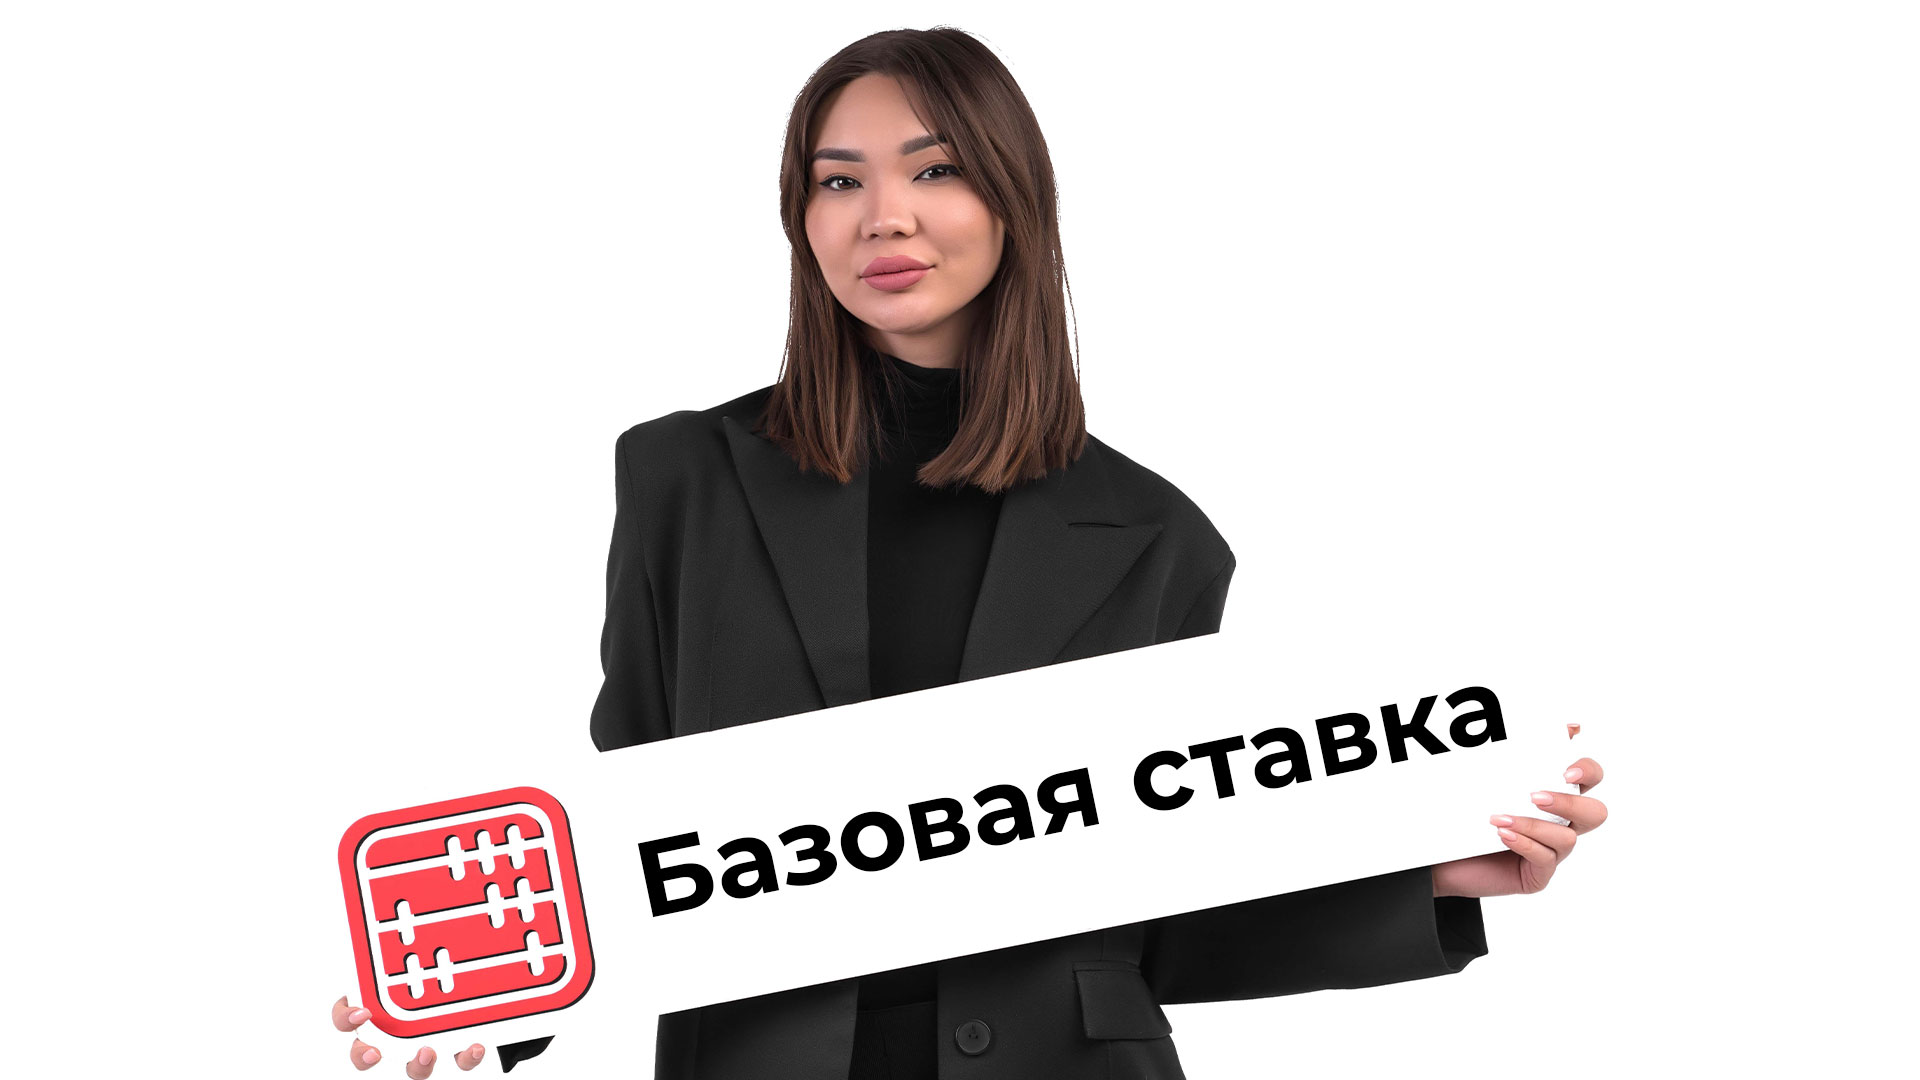 Базовая ставка в Казахстане снова снижена